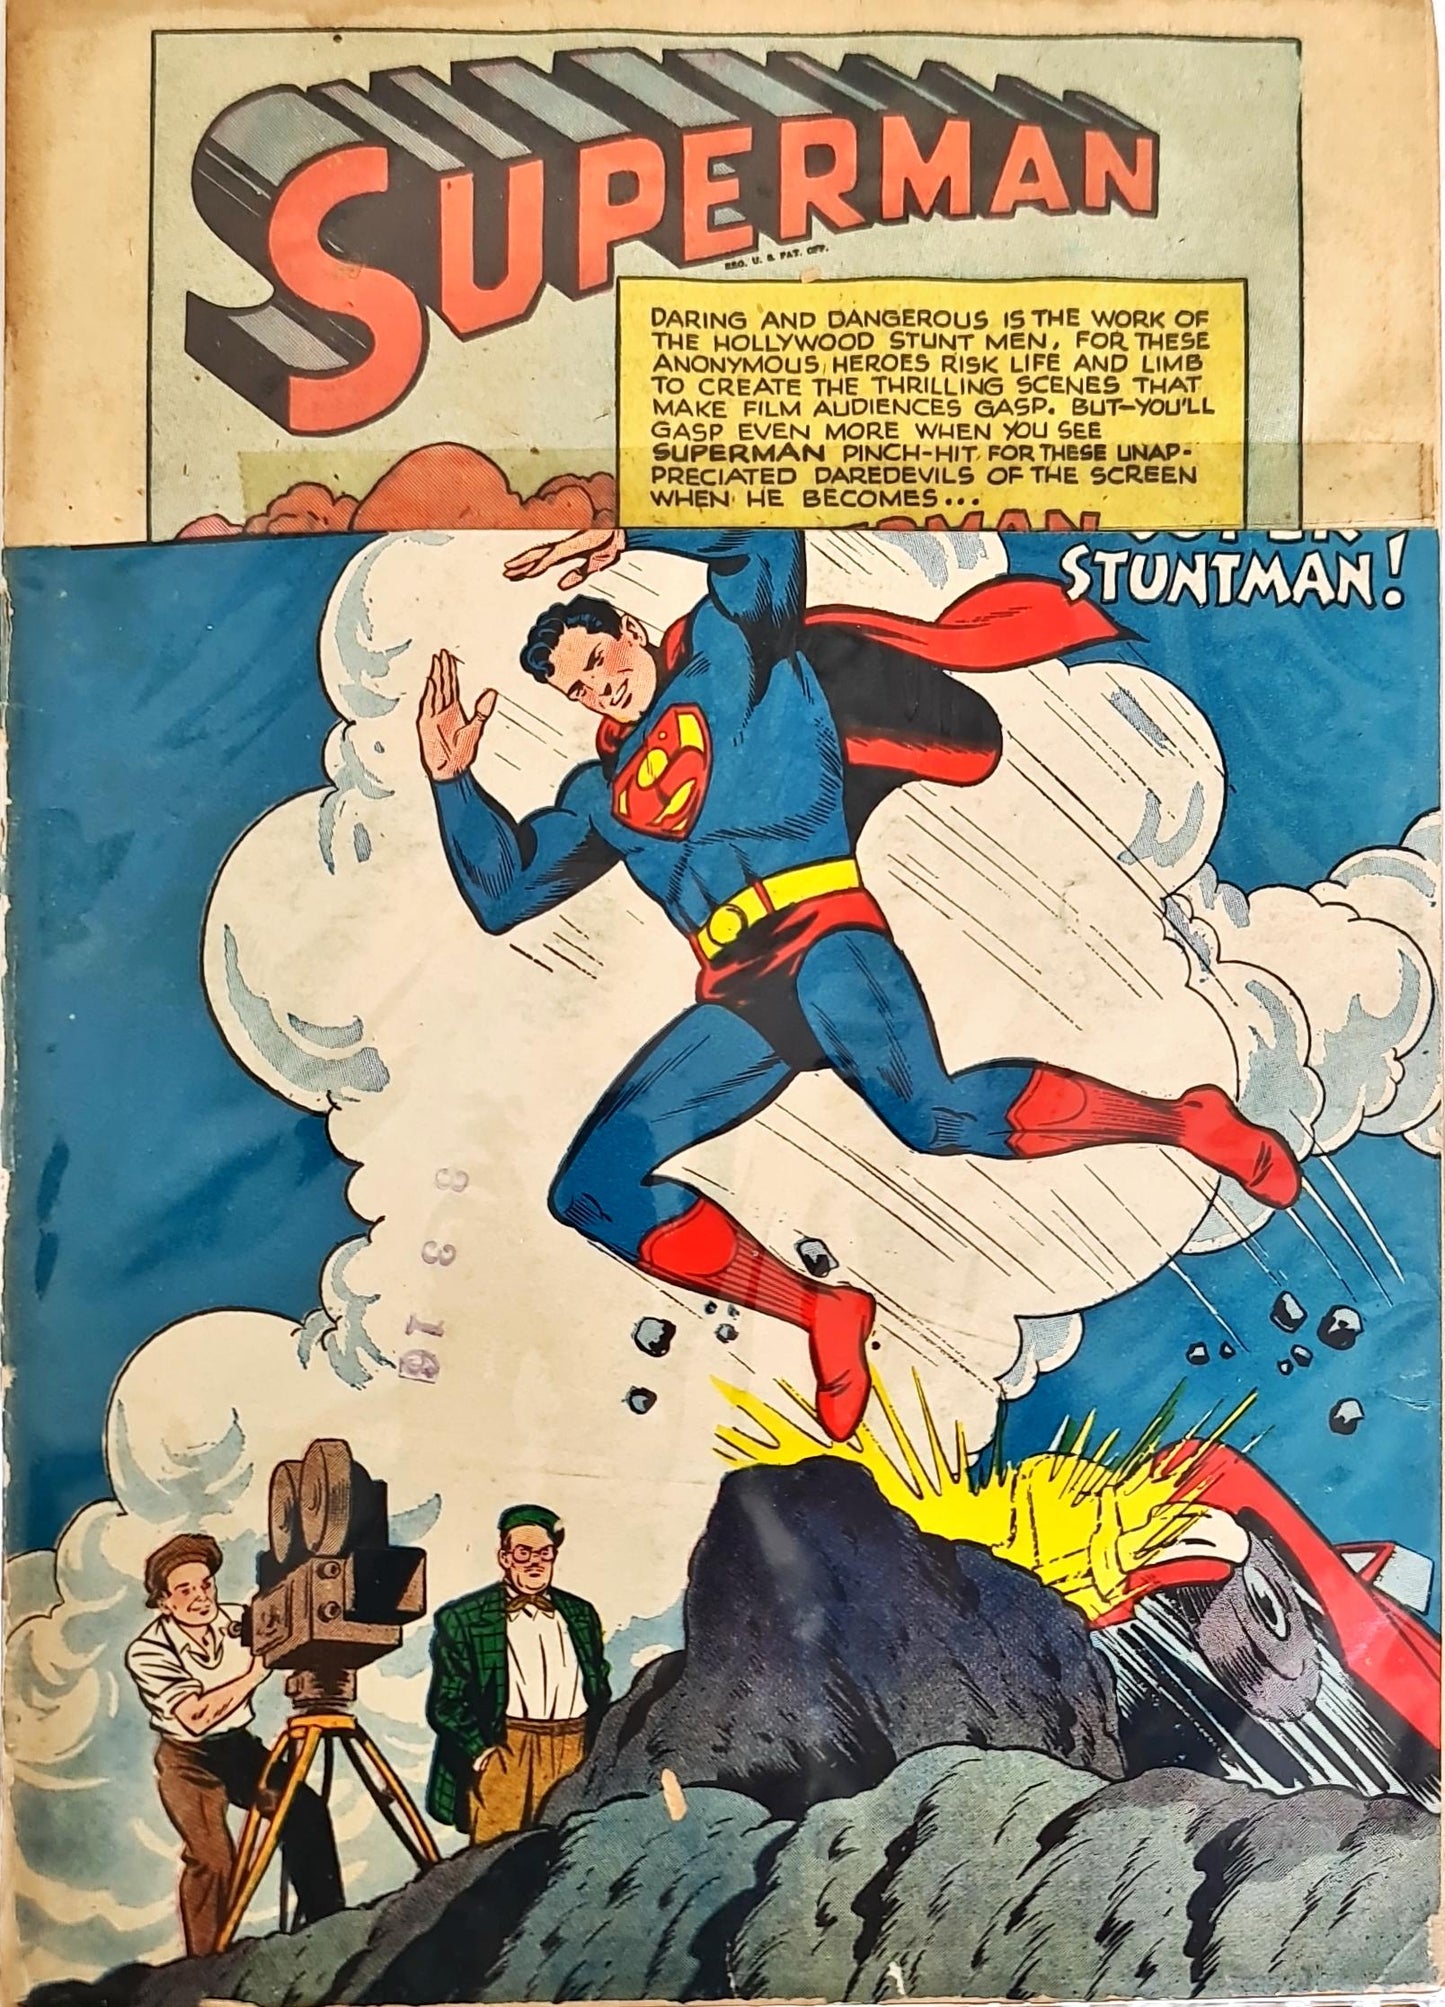 Action Comics #120 (1948) Golden Age Superman Comic